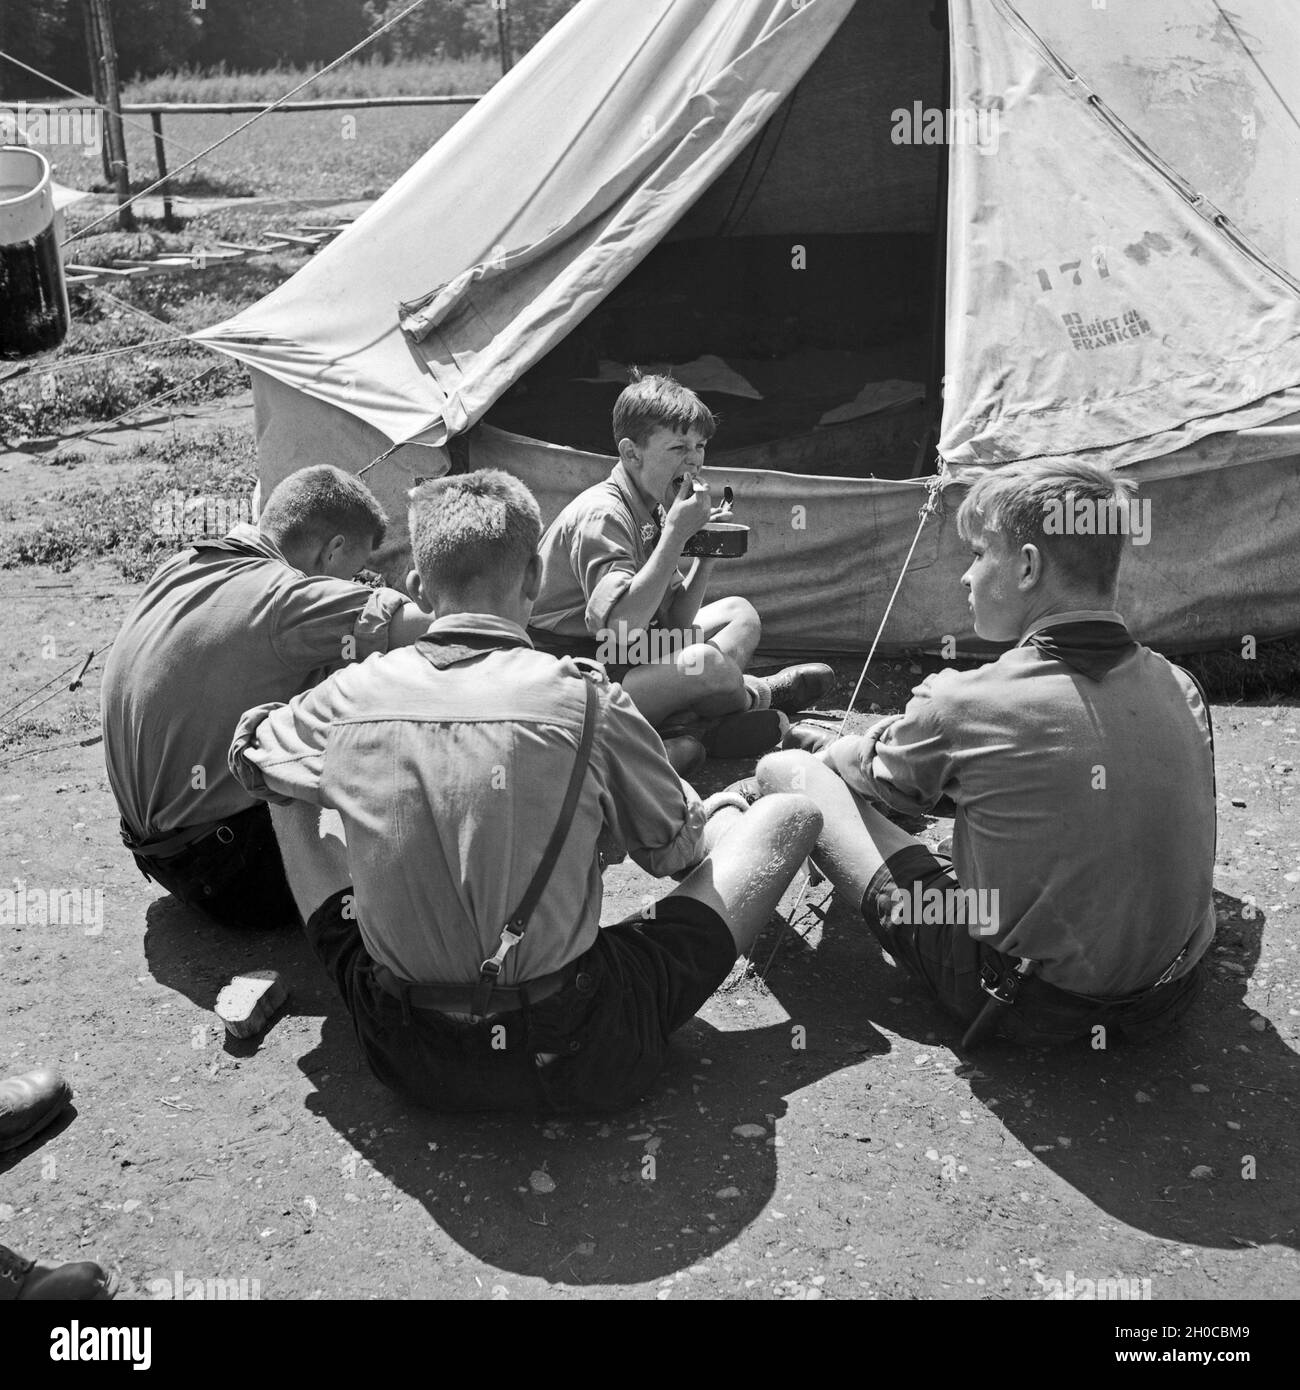 Mittagspause und Essen fassen im Hitlerjugend Lager, Österreich 1930s. Lunch break at the Hitler youth camp, Austria 1930s. Stock Photo